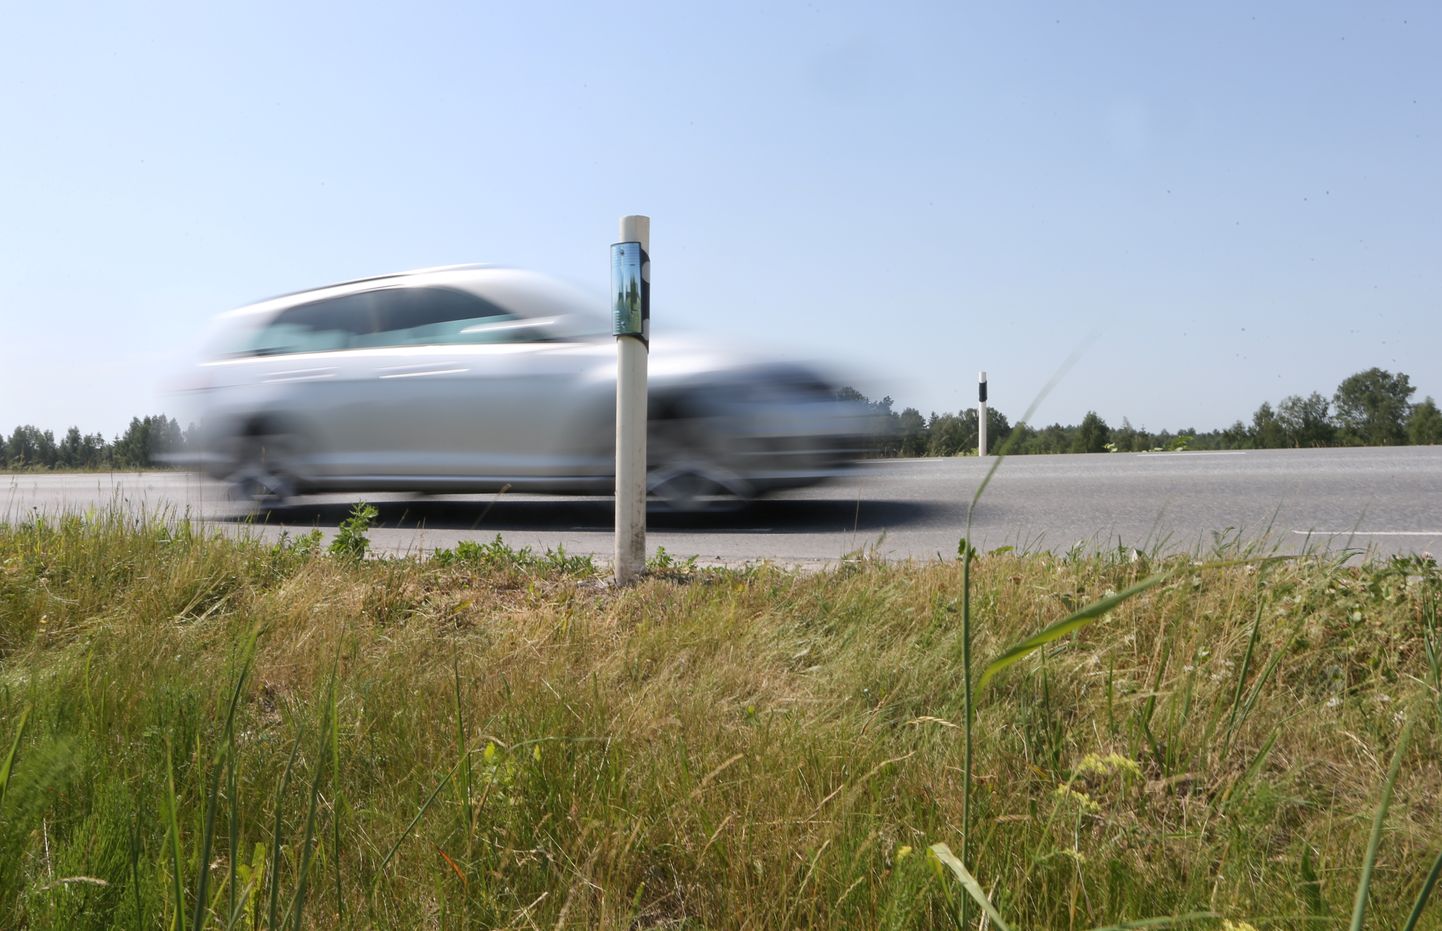 Ületades Taanis räigelt kiirust, võid oma autole hüvasti öelda.